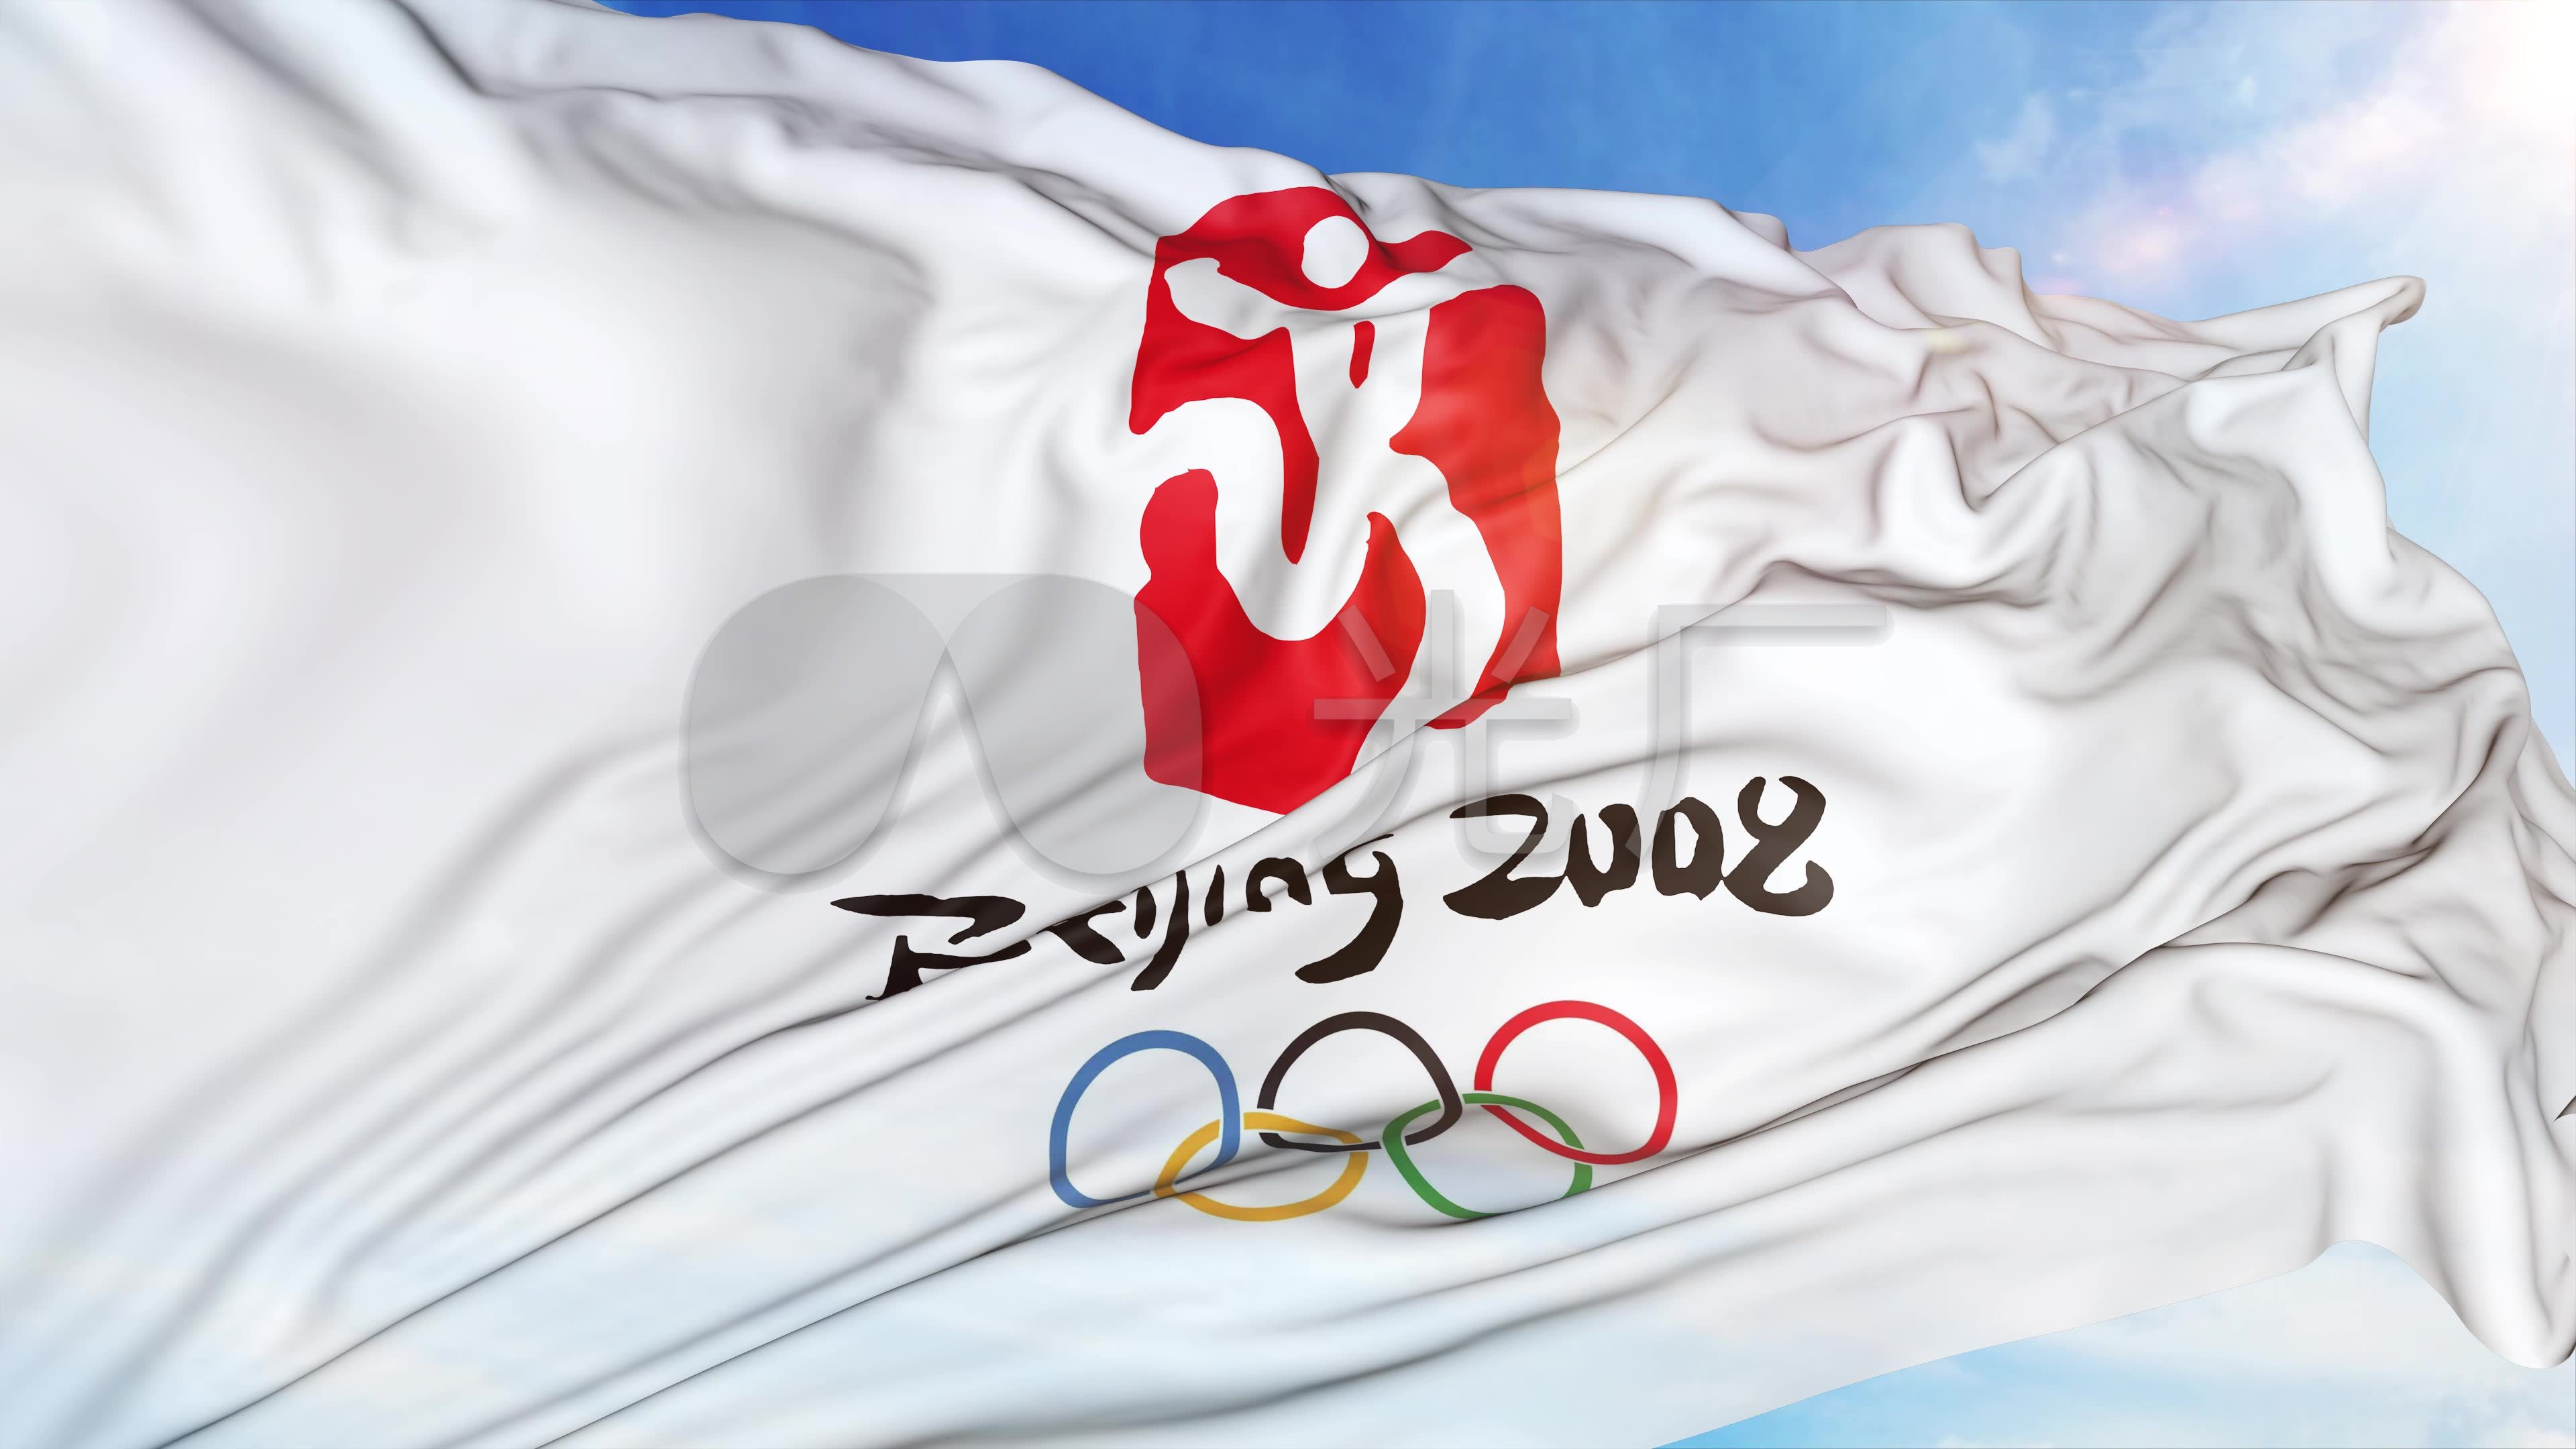 4k北京奥运会旗子循环_3840x2160_高清视频素材下载